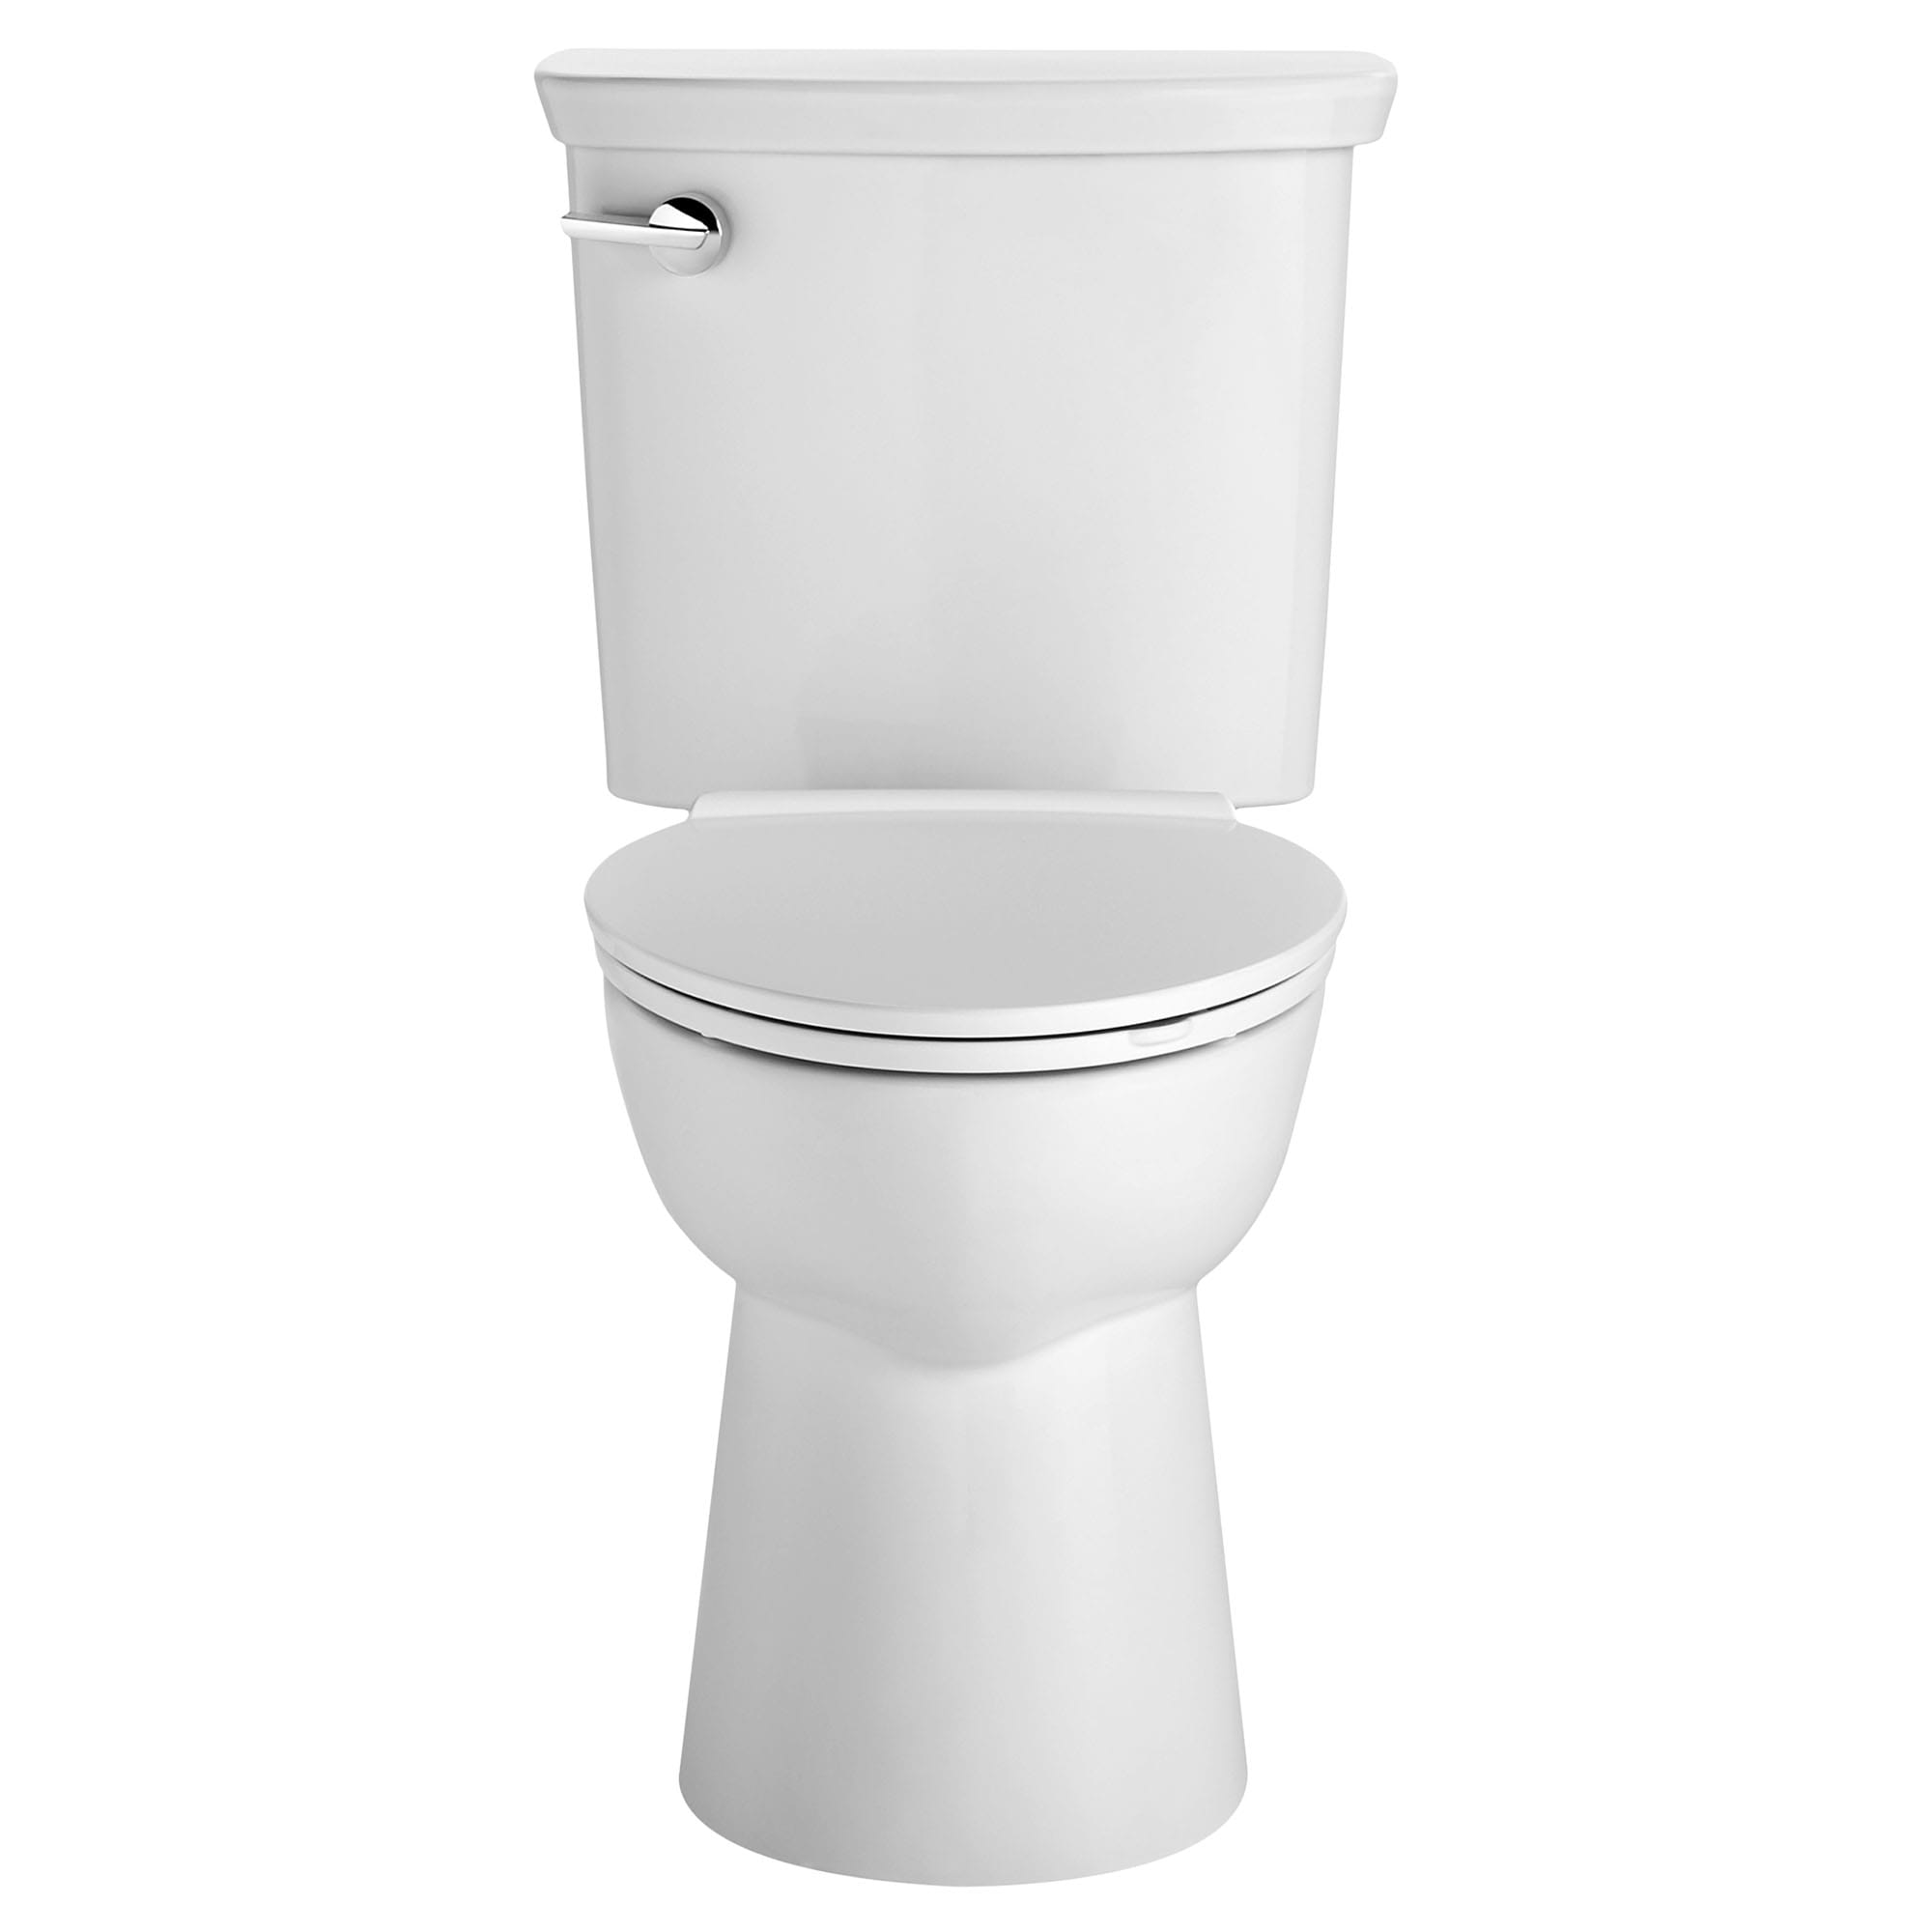 Toilette VorMax, 2 pièces, 1,28 gpc/4,8 lpc, à cuvette allongée à hauteur de chaise, sans siège